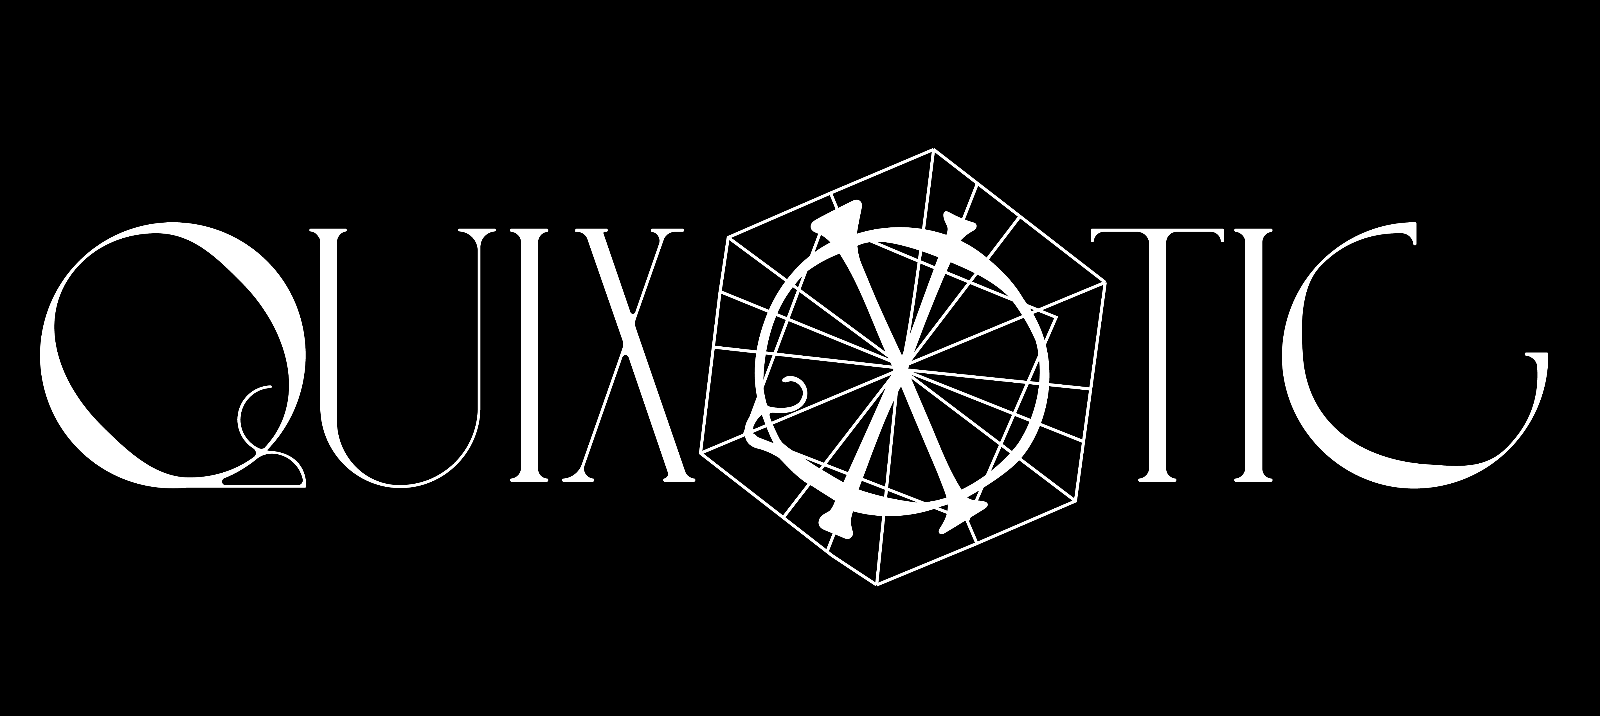 QUIXOTIC: SUMMA 2021 Exhibition Launch